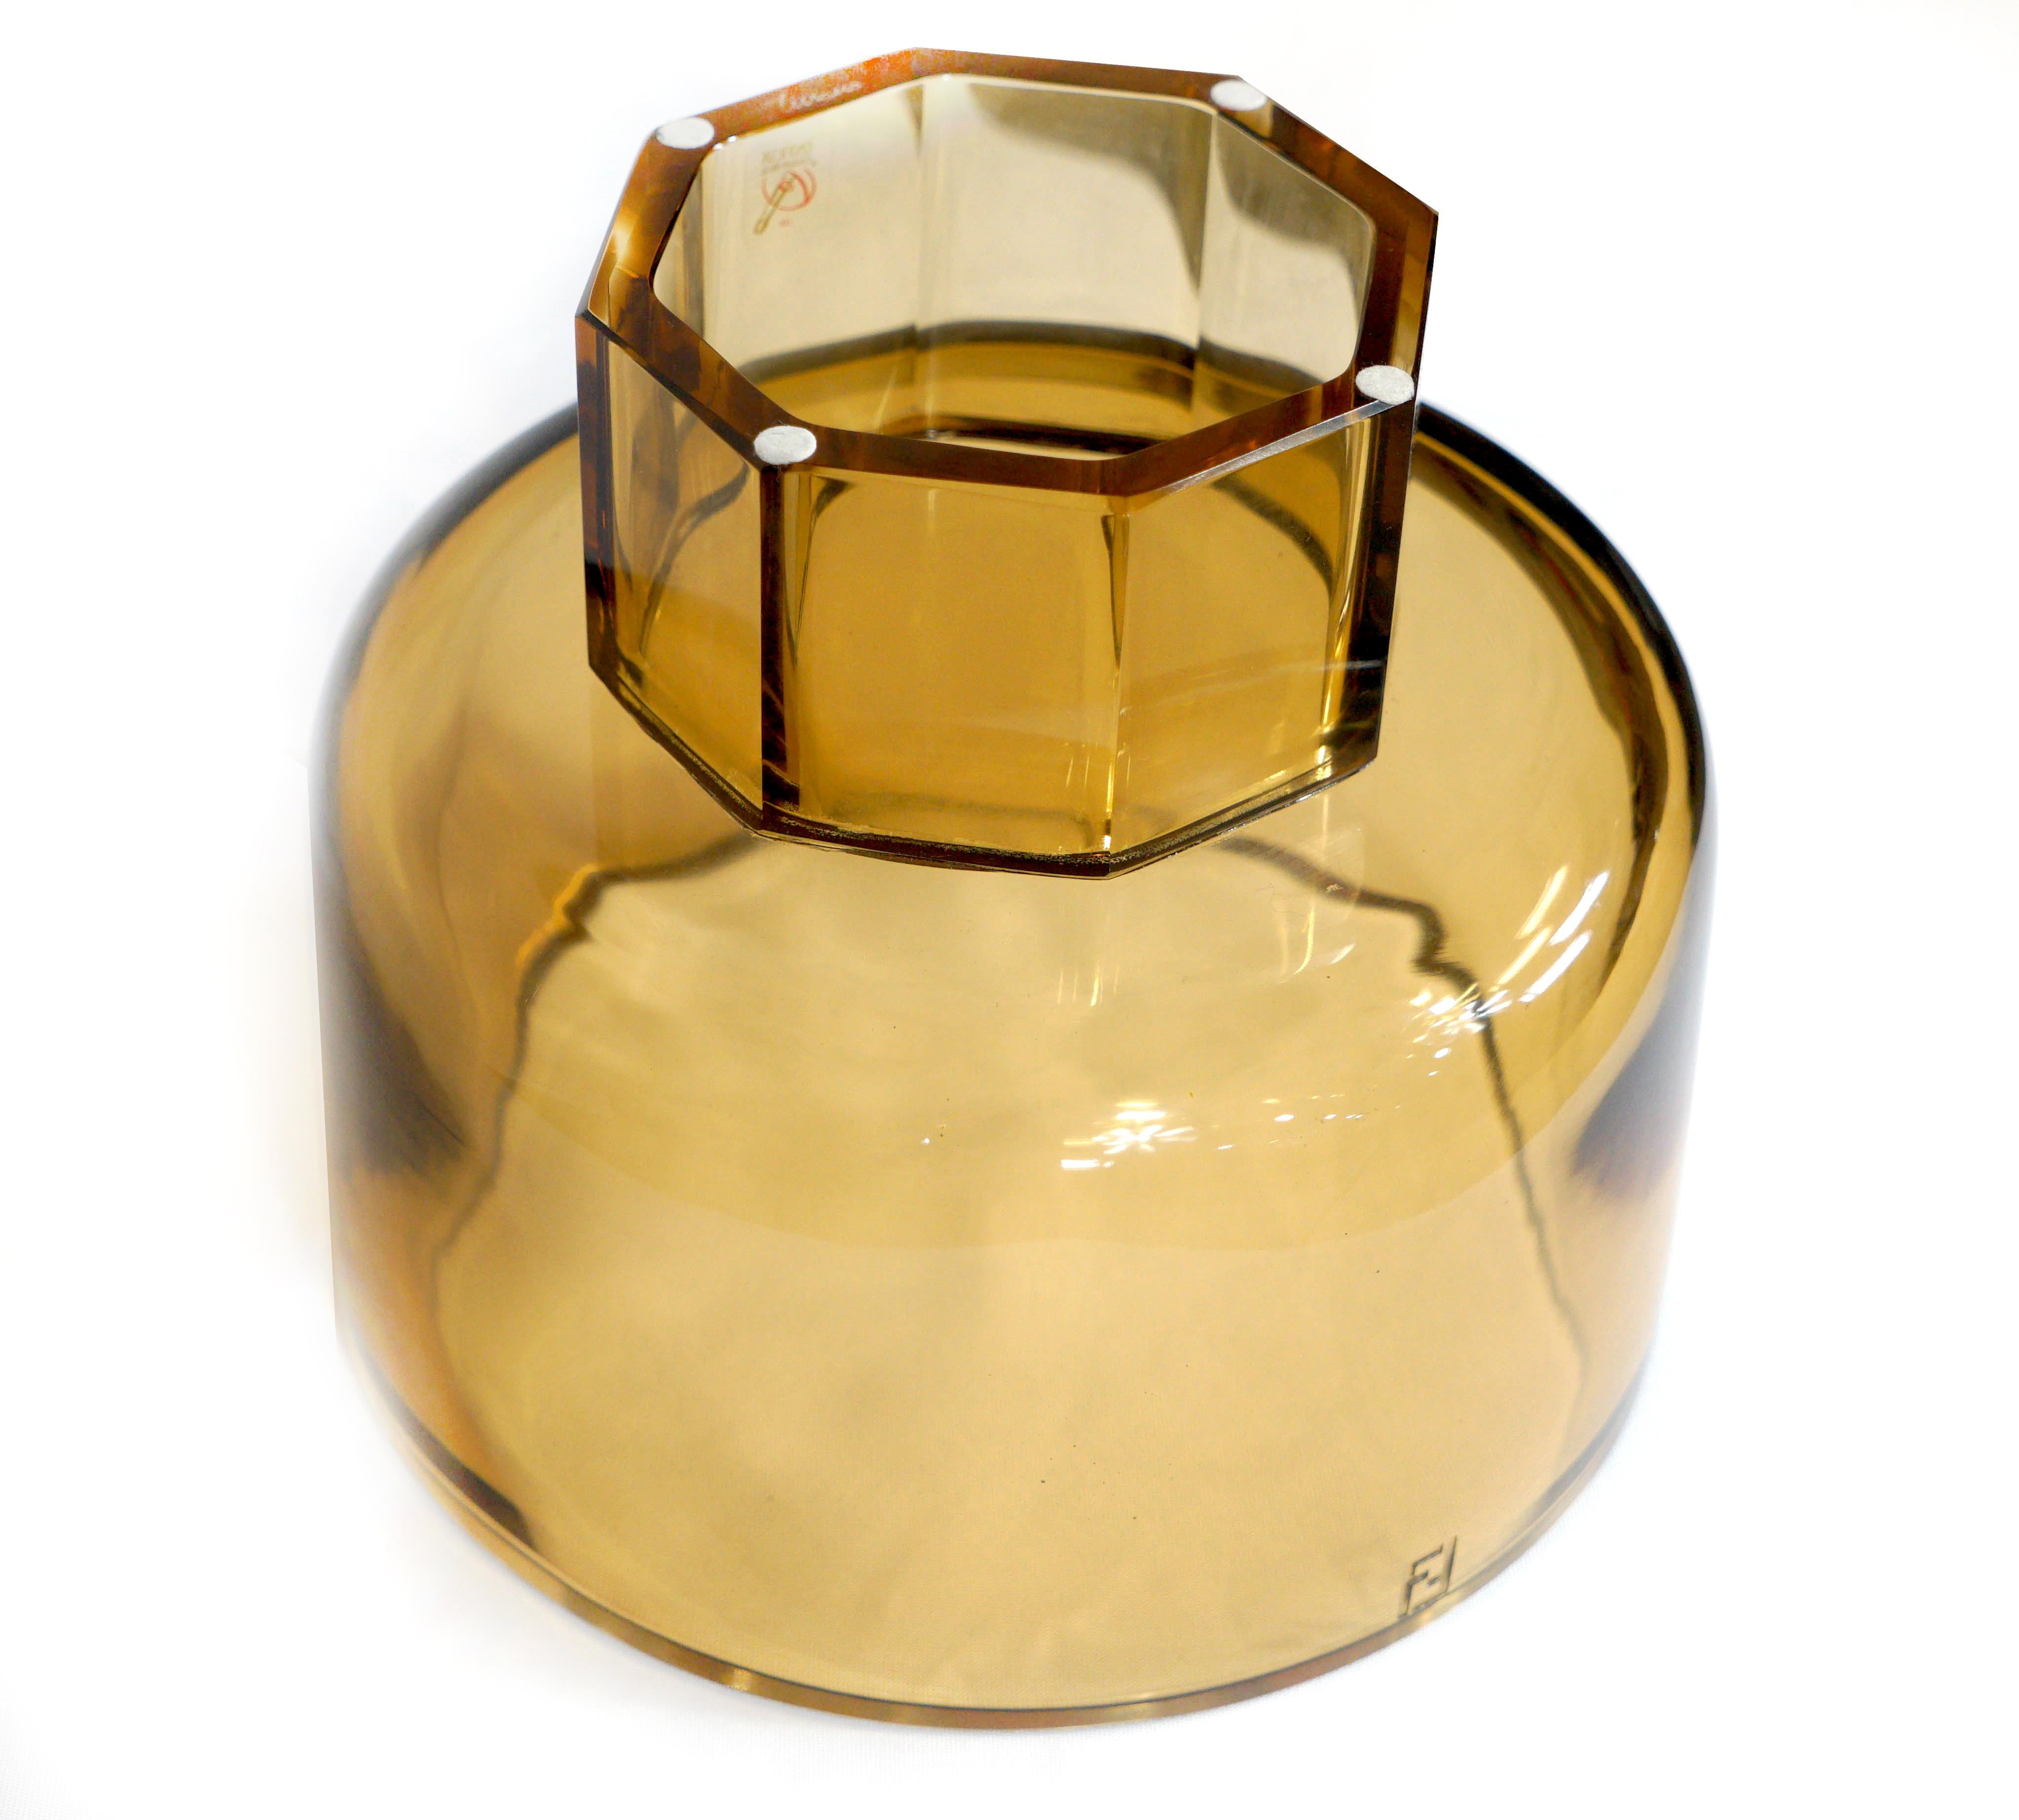 Le verre de Murano soufflé à la main dans un ton jaune convient aux compositions florales, aux orchidées plantées et plus encore. Gravé du logo FF classique de Fendi. La luminosité et la couleur sont dues à une approche artistique qui fait partie du